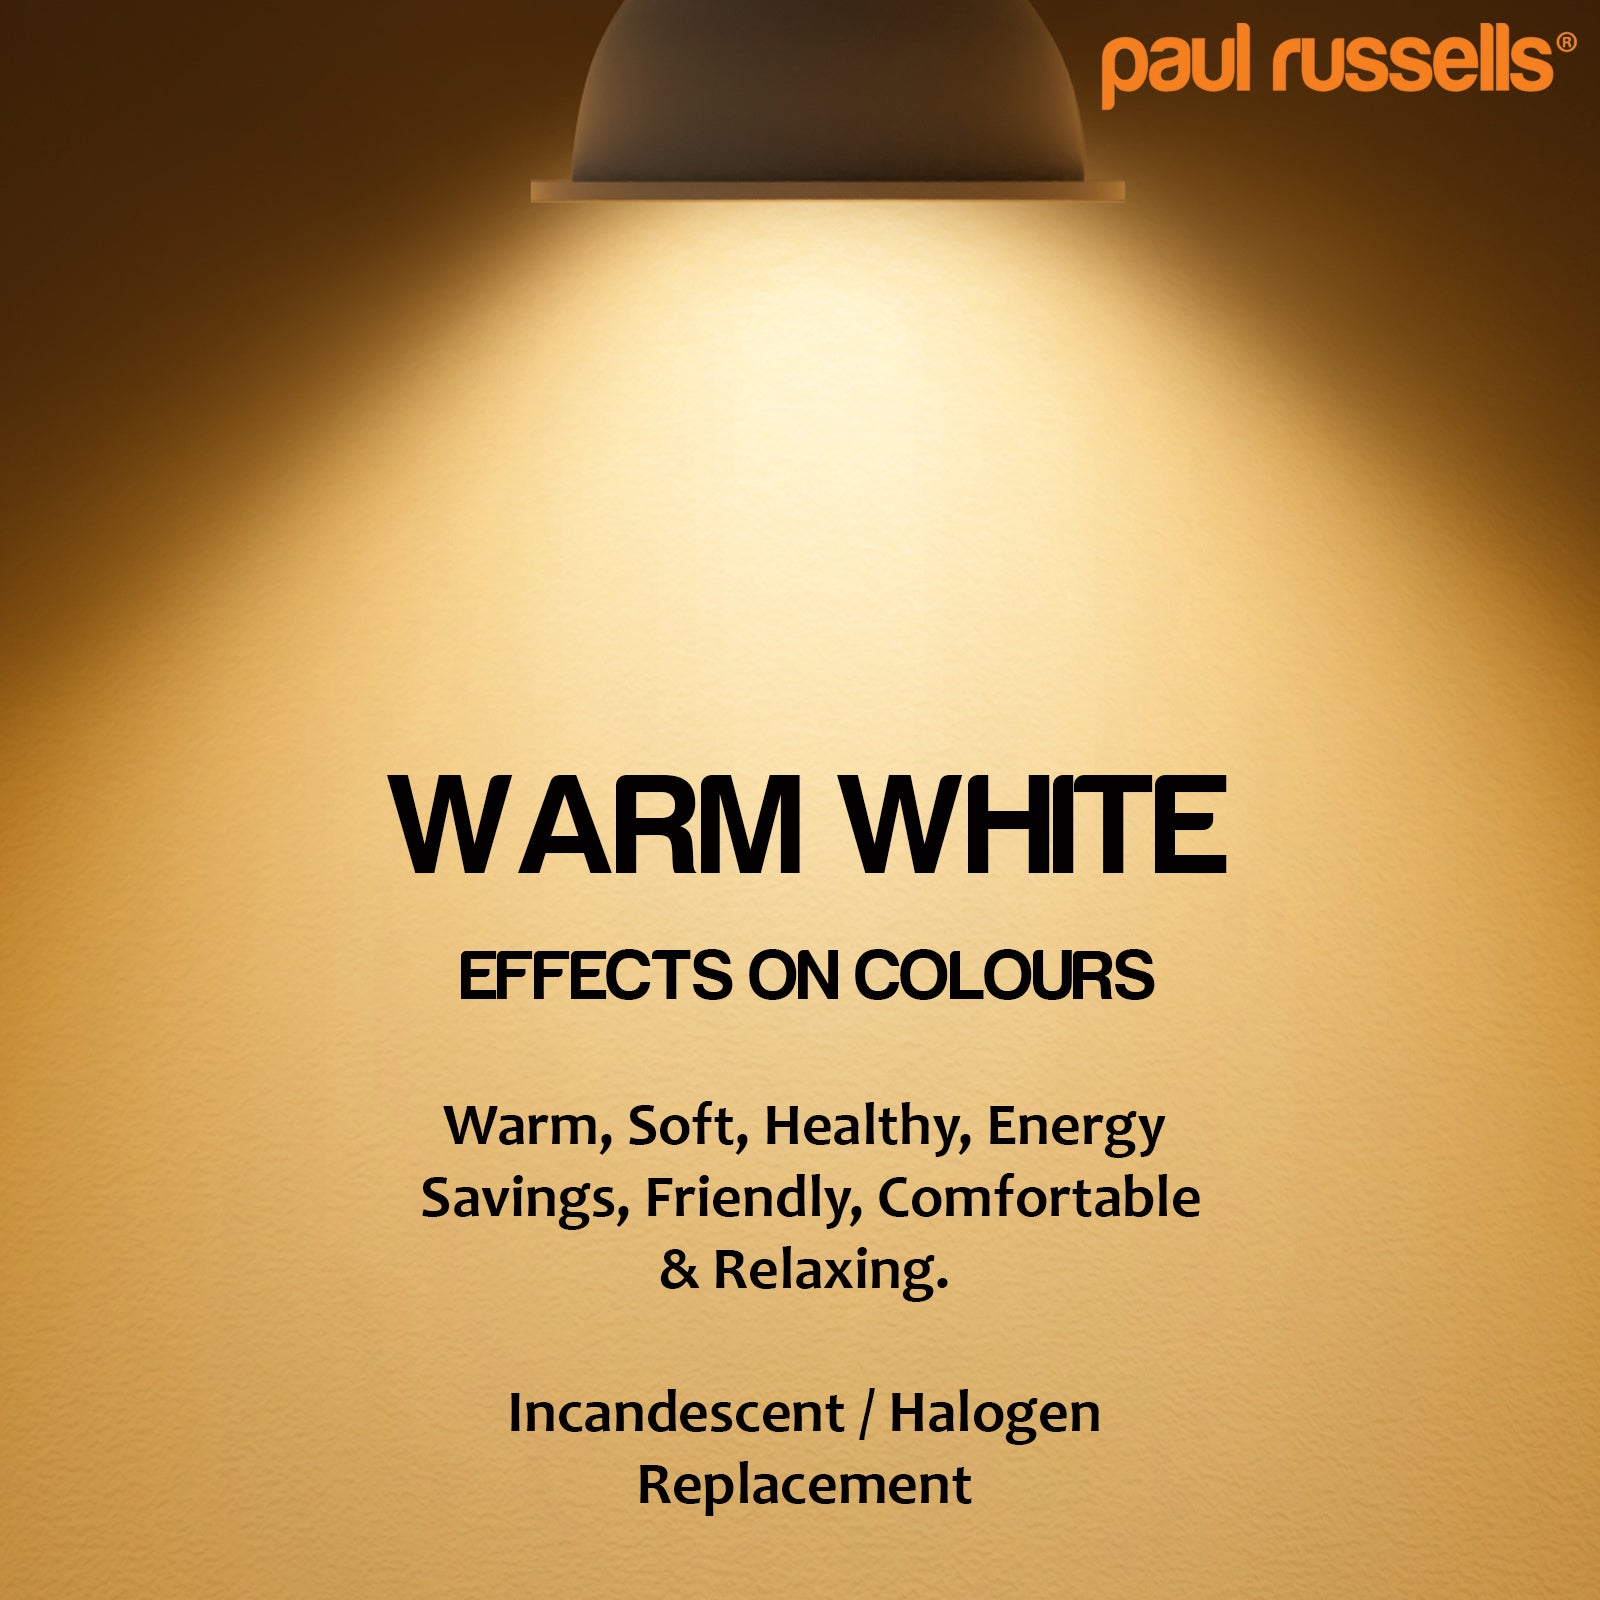 LED 4W (40w) Spotlight, GU10, 340 Lumens, Warm White(2700K), 240V